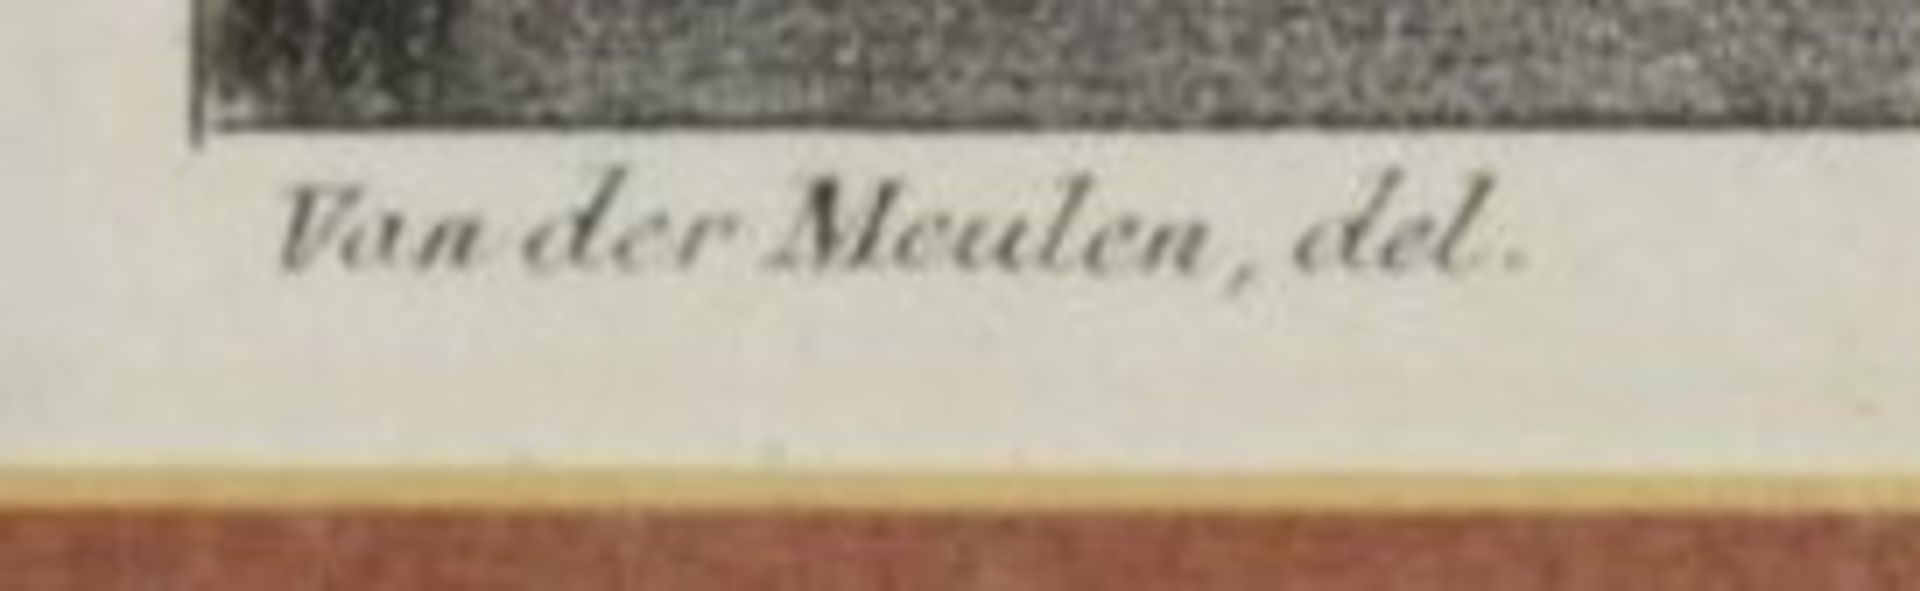 Stich um 1820, Der Seifenbläser, van der Meulen, ger./Glas, RG 50 x 41cm. - Bild 2 aus 4